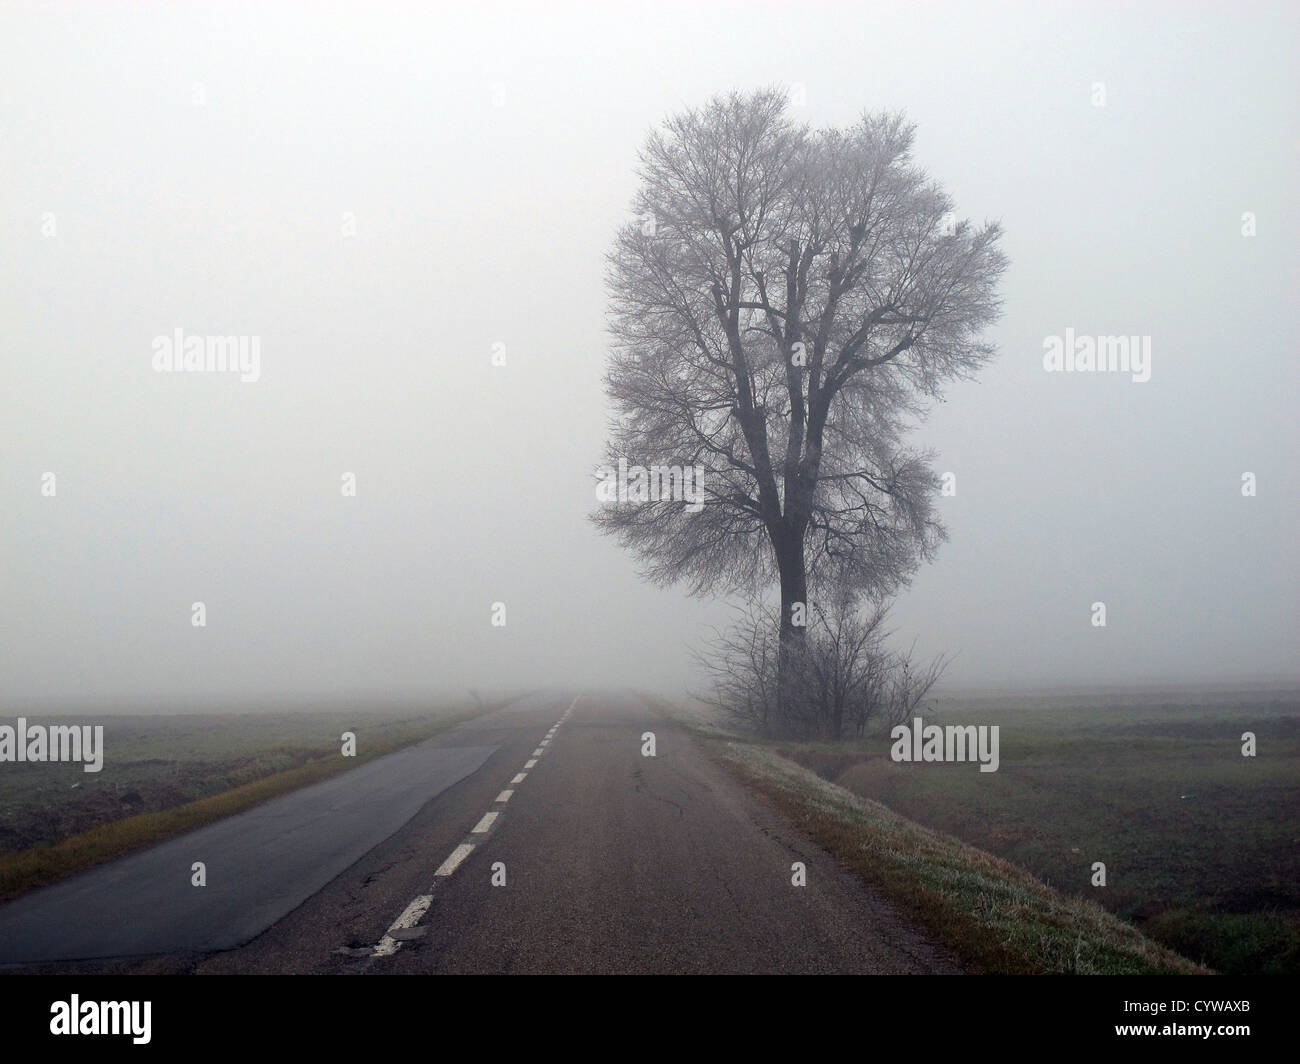 Po valley close to Reggio Emilia, PO river area, trees in the fog Stock Photo